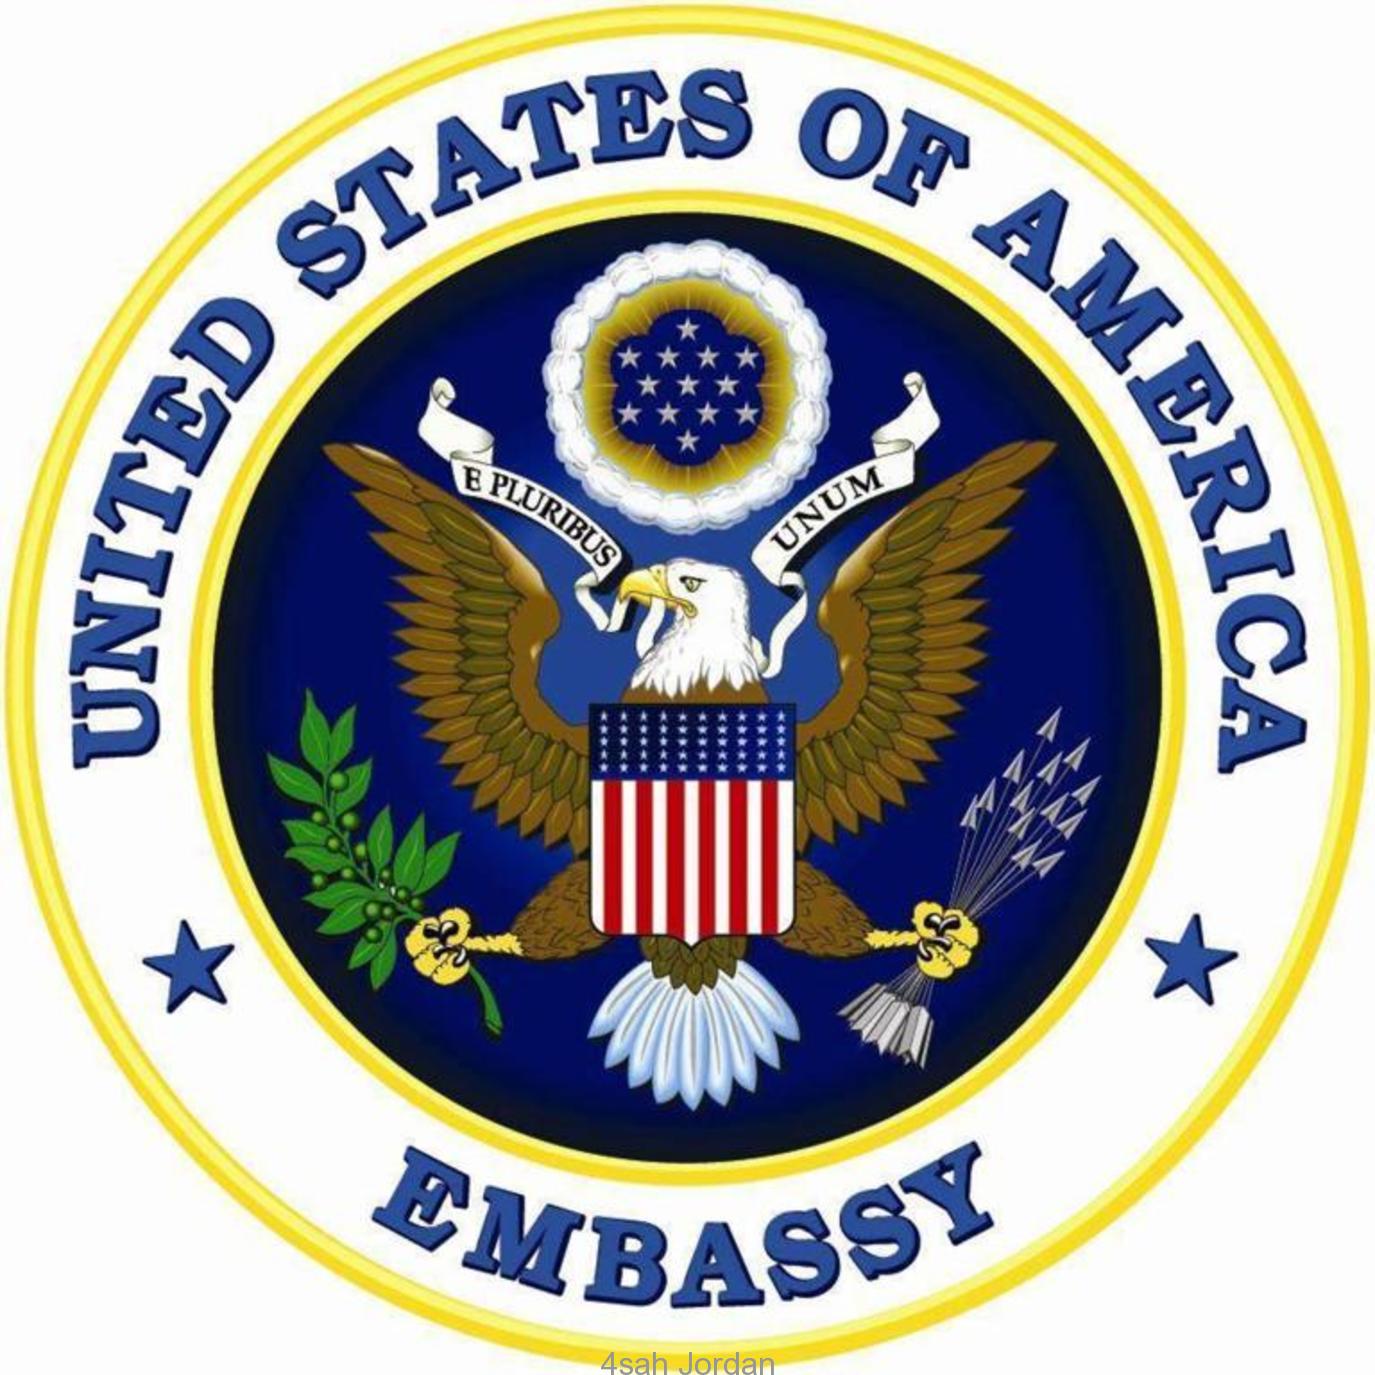 عاجل : مطلوب عمال مستودعات للعمل براتب لايقل عن 500 دينار للعمل لدى السفارة الامريكية بعمان